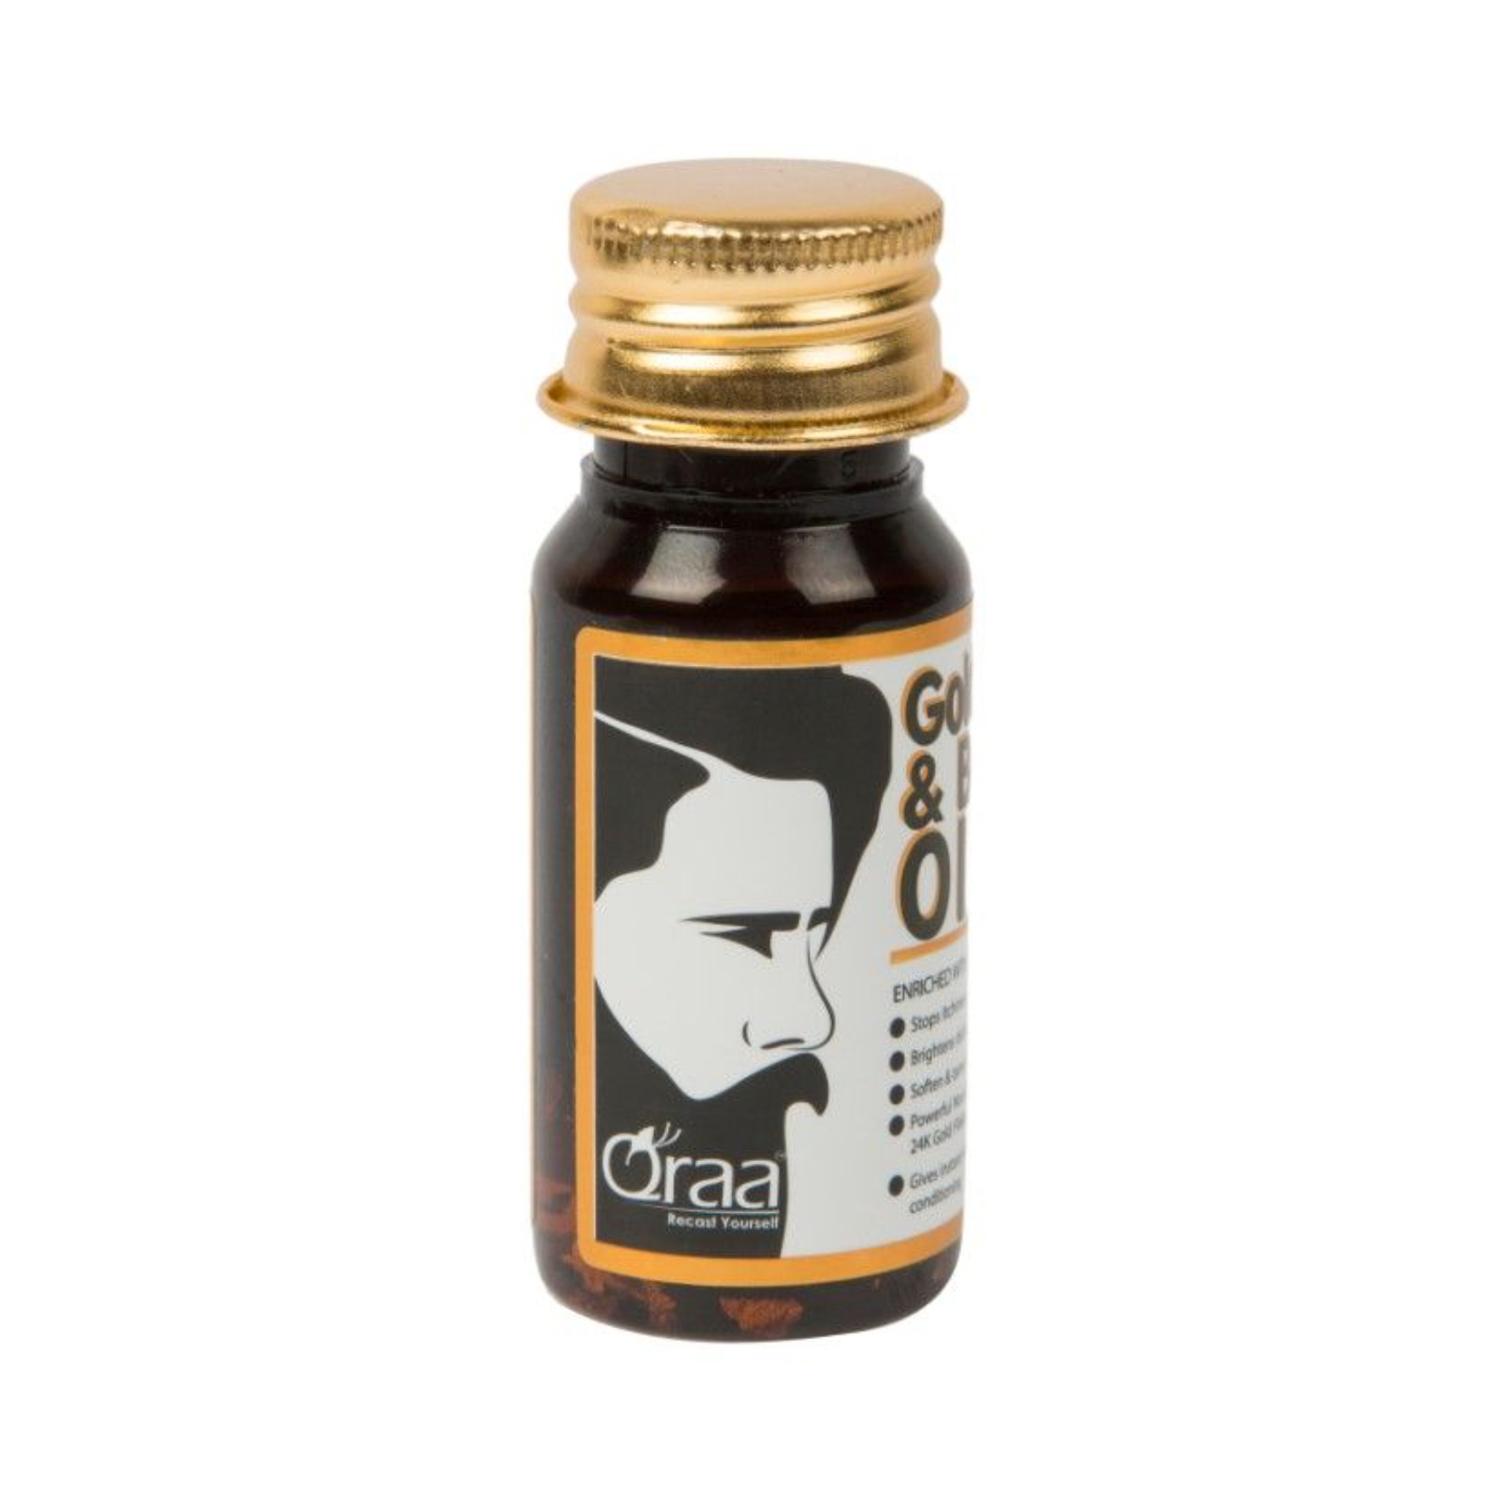 Qraamen | Qraamen Luxurious Gold Face and Beard Oil (30 ml)